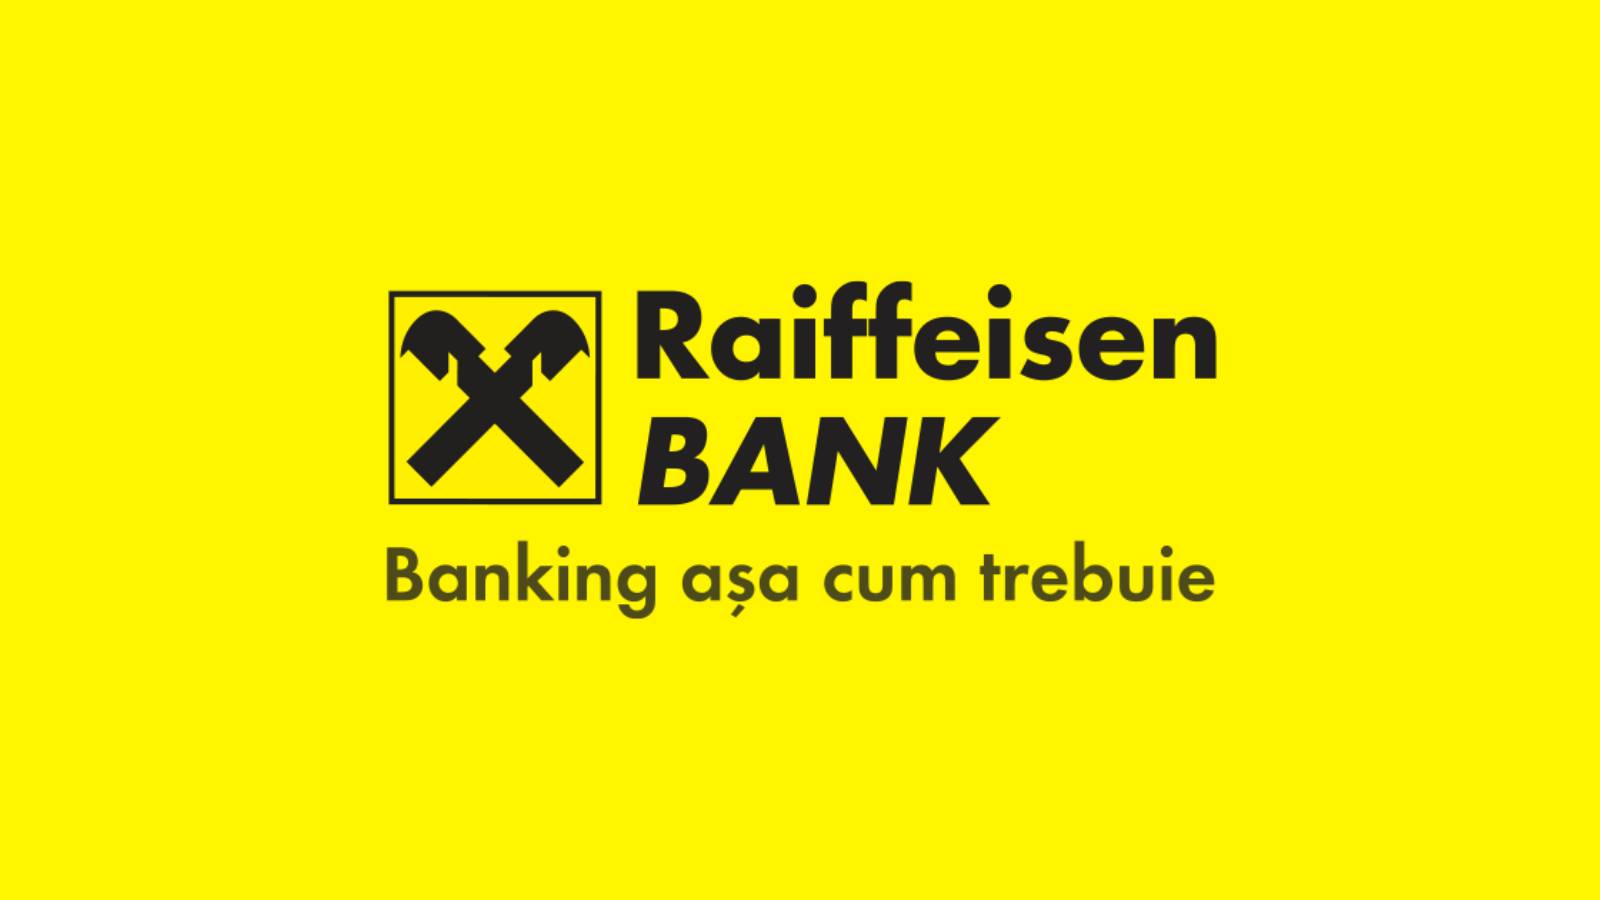 Trabajo del banco Raiffeisen